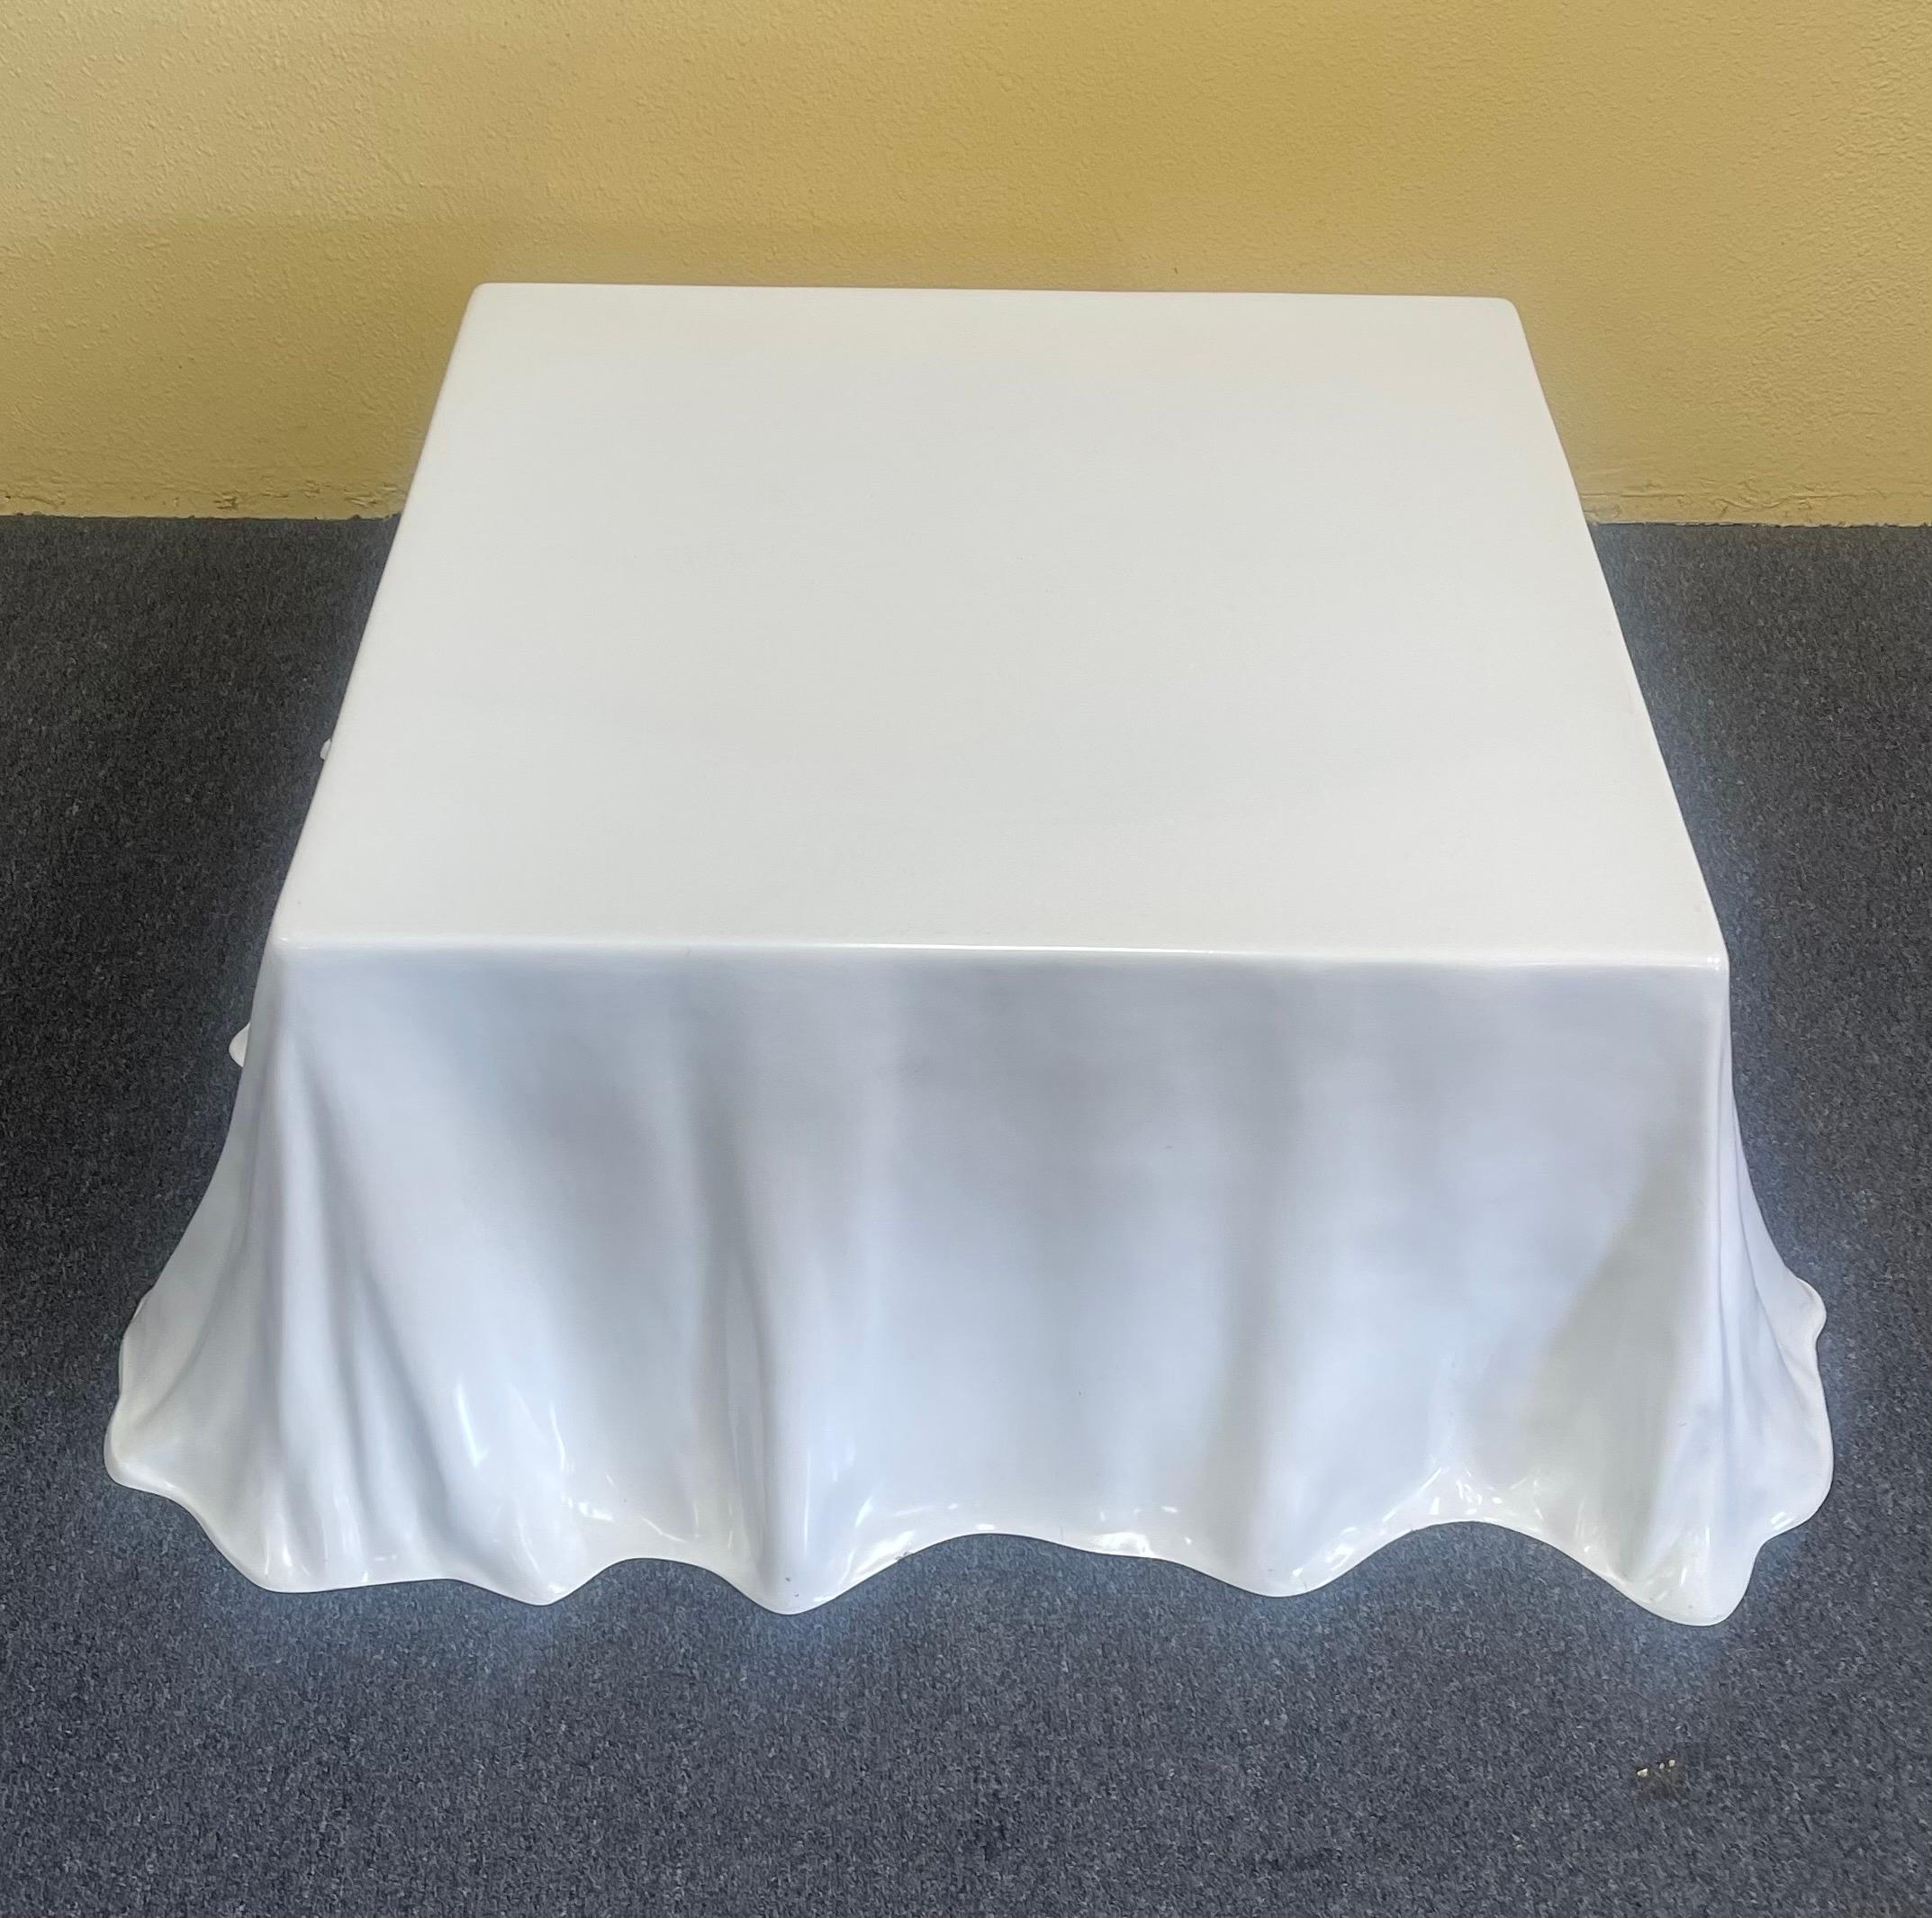 Rare Tovaglia / Tablecloth Coffee Table by Alberto Bazzani for Studio Tetrarch 2